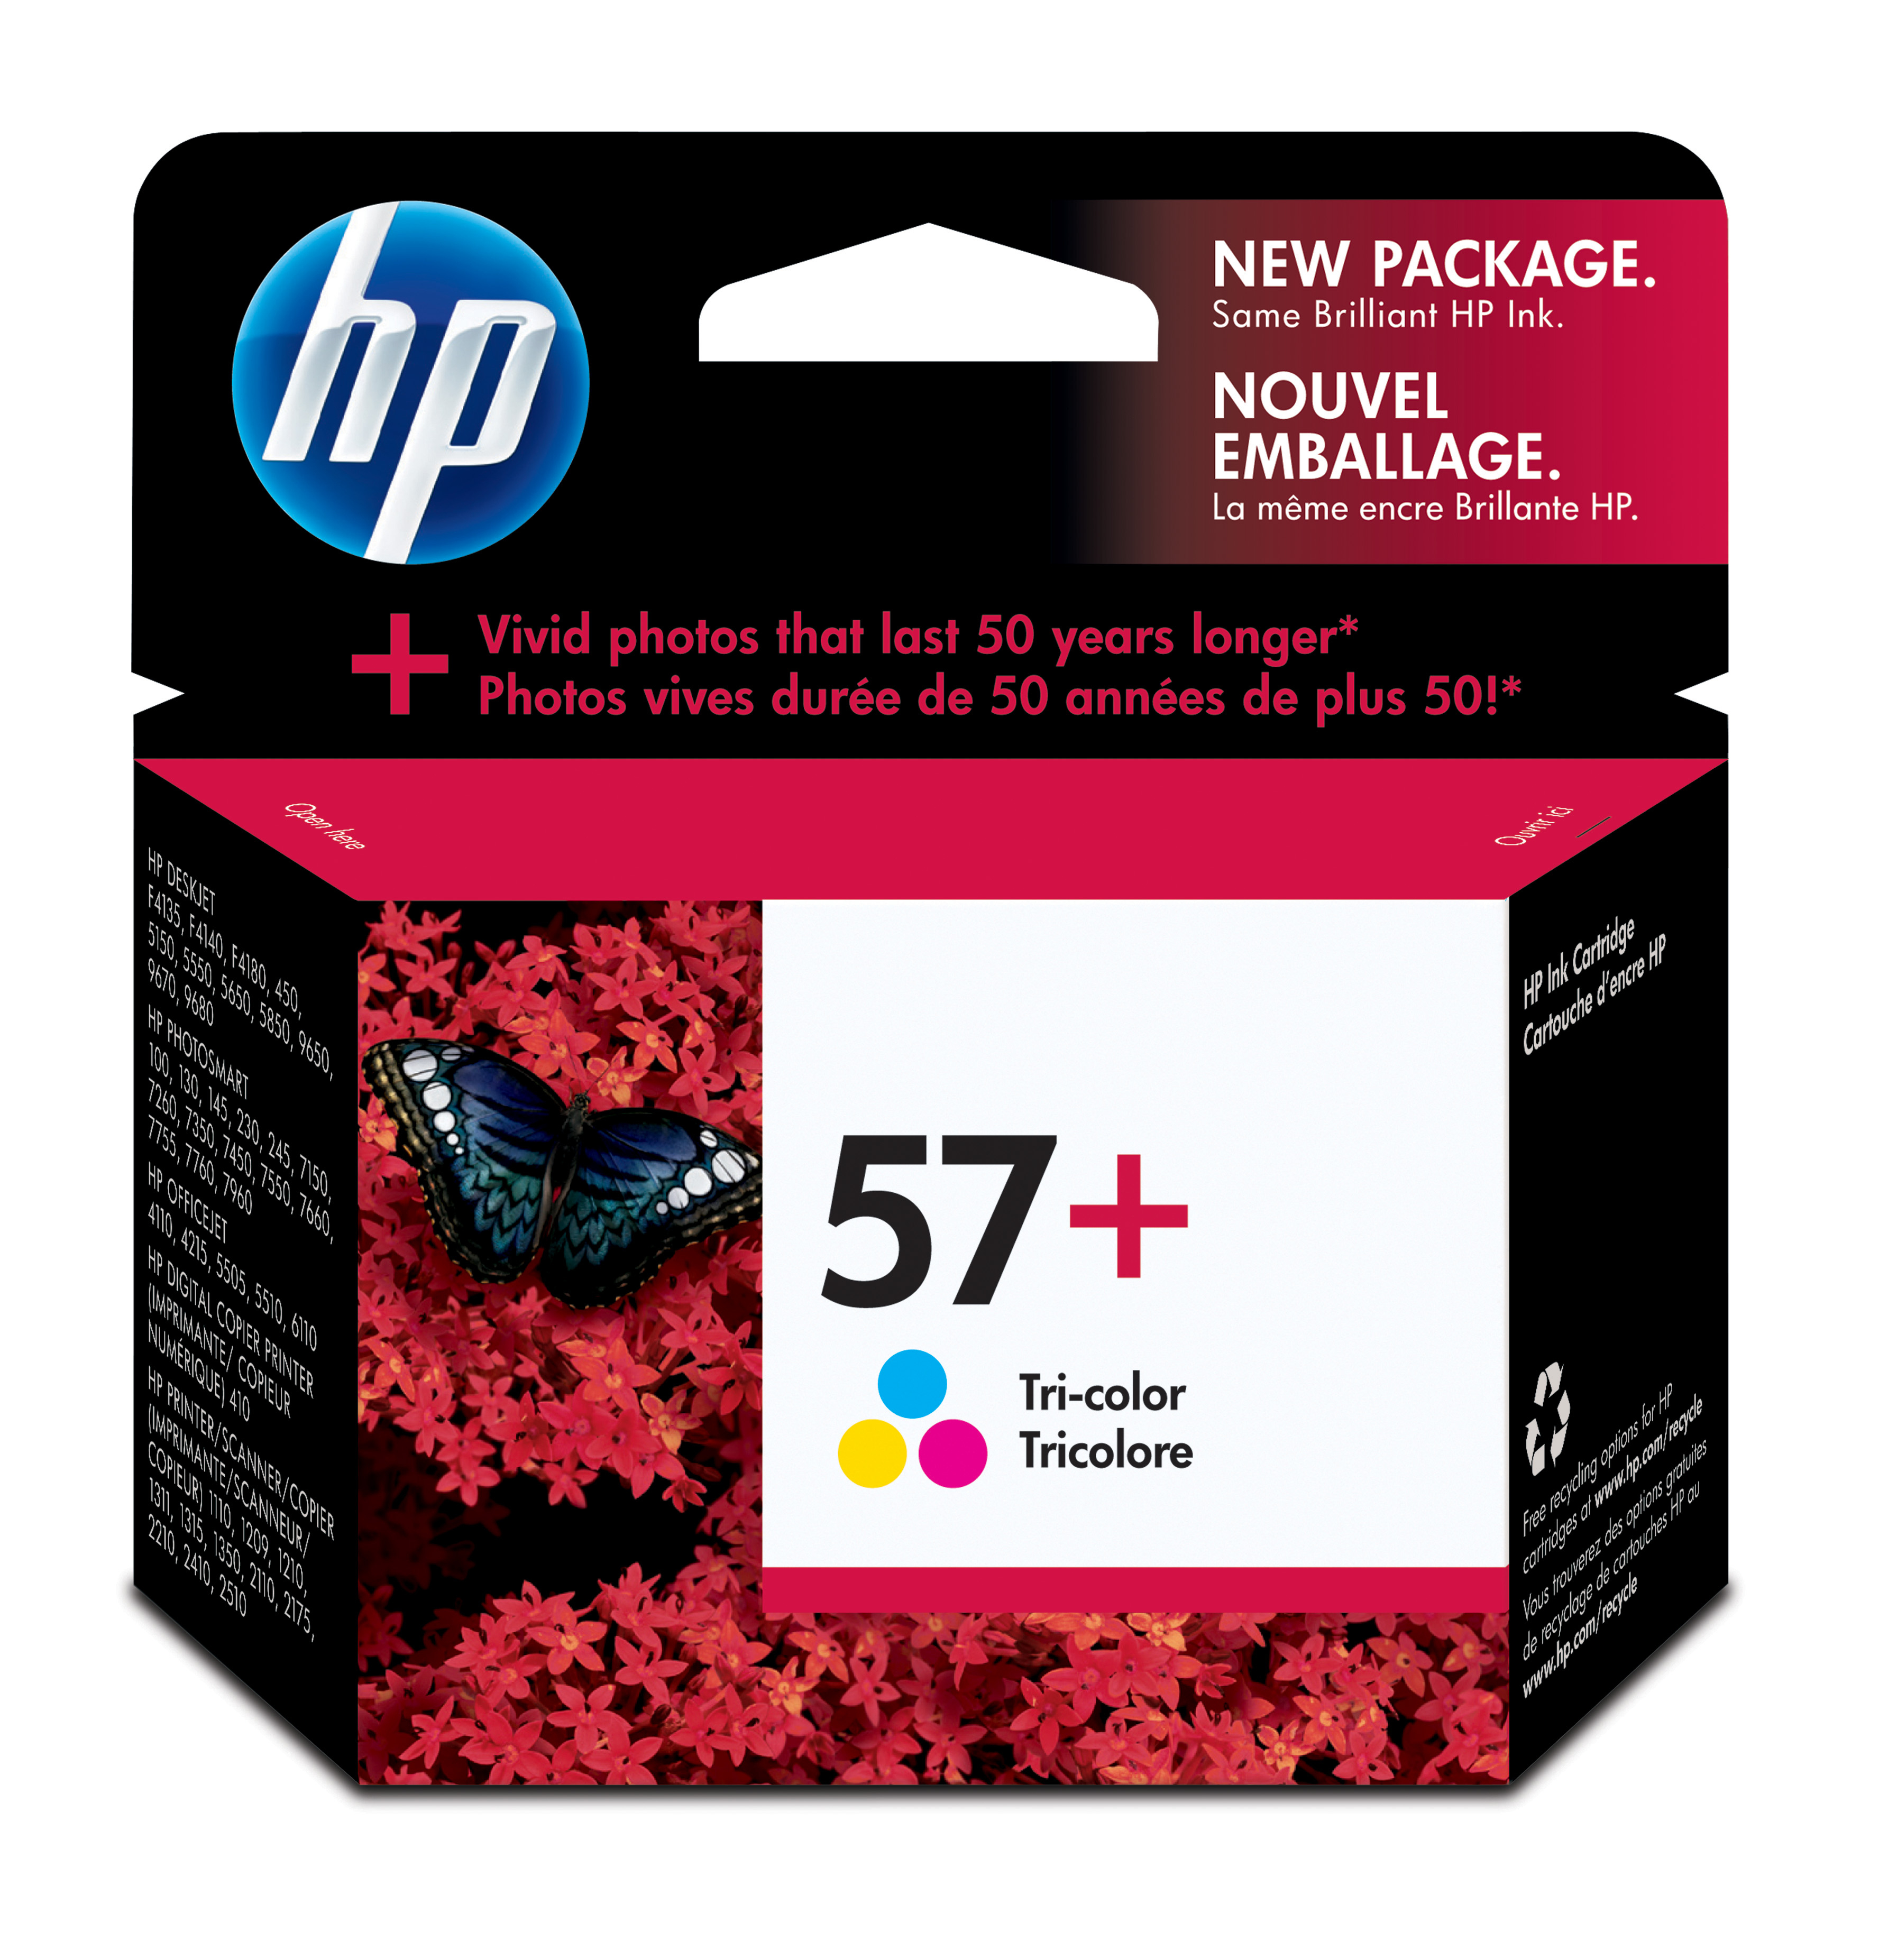 HP 57+ Tri-color Inkjet Print Cartridge Genuine HP Inkjet